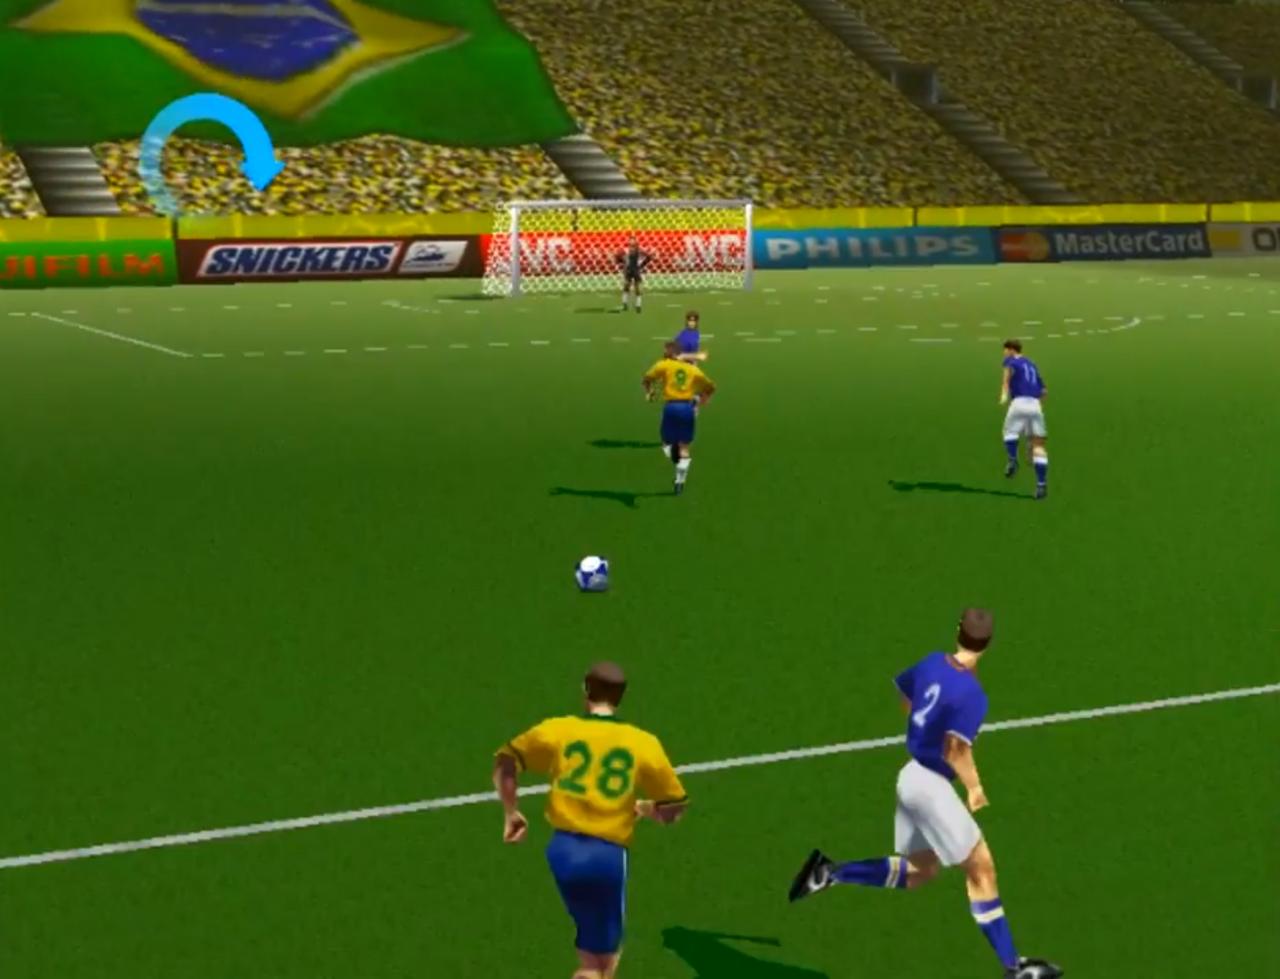 jogando futebol brasileiro 96 do super nintendo 